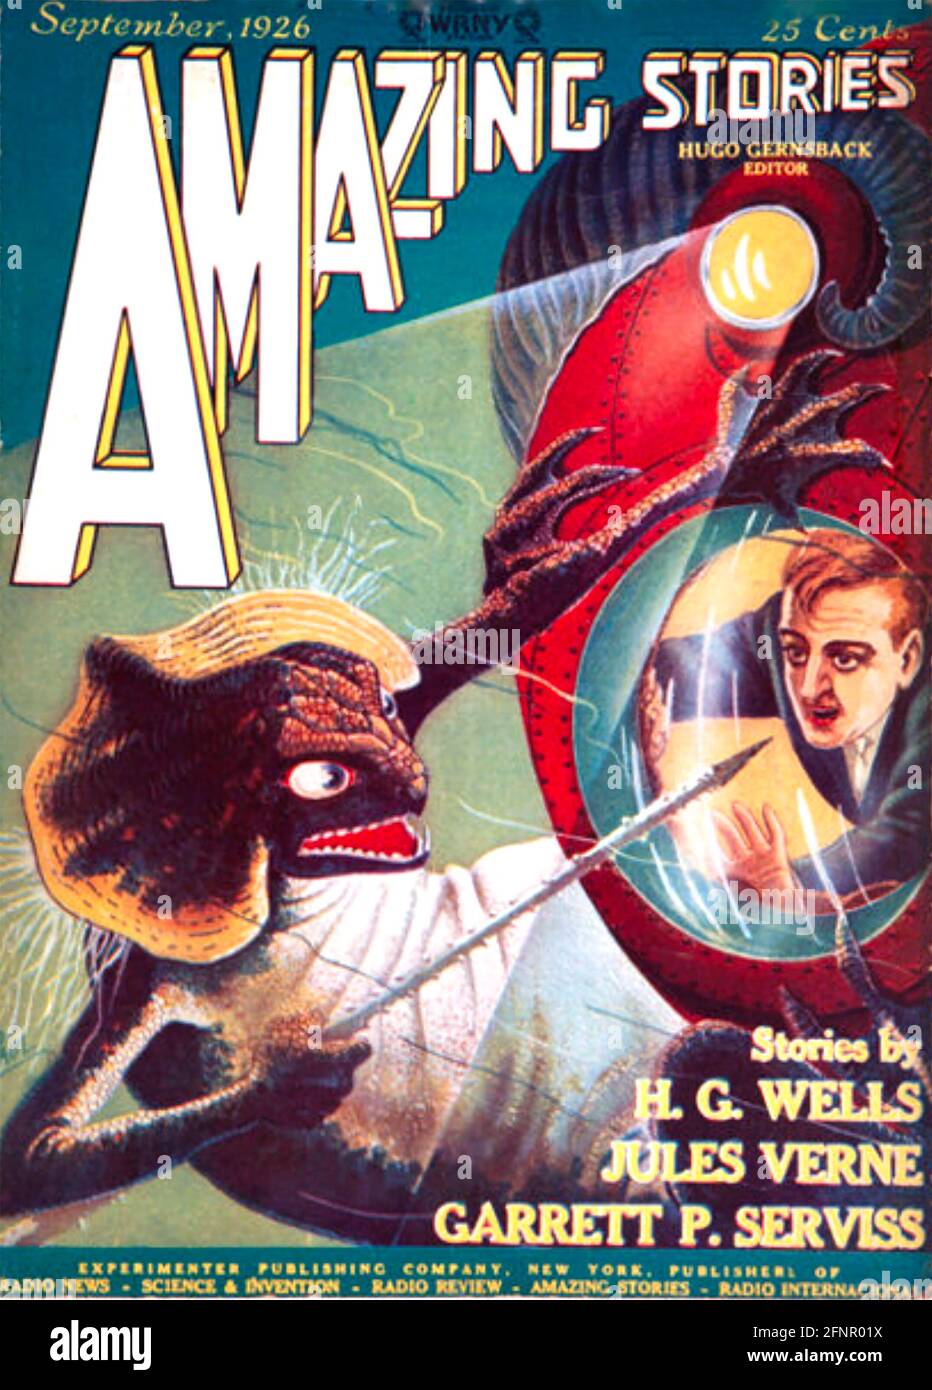 HISTOIRES INCROYABLES édition de septembre 1926 du magazine américain de science-fiction fondé par Hugo Gernsback en avril de la même année. Ce numéro contient une histoire de H. G. Wells Banque D'Images